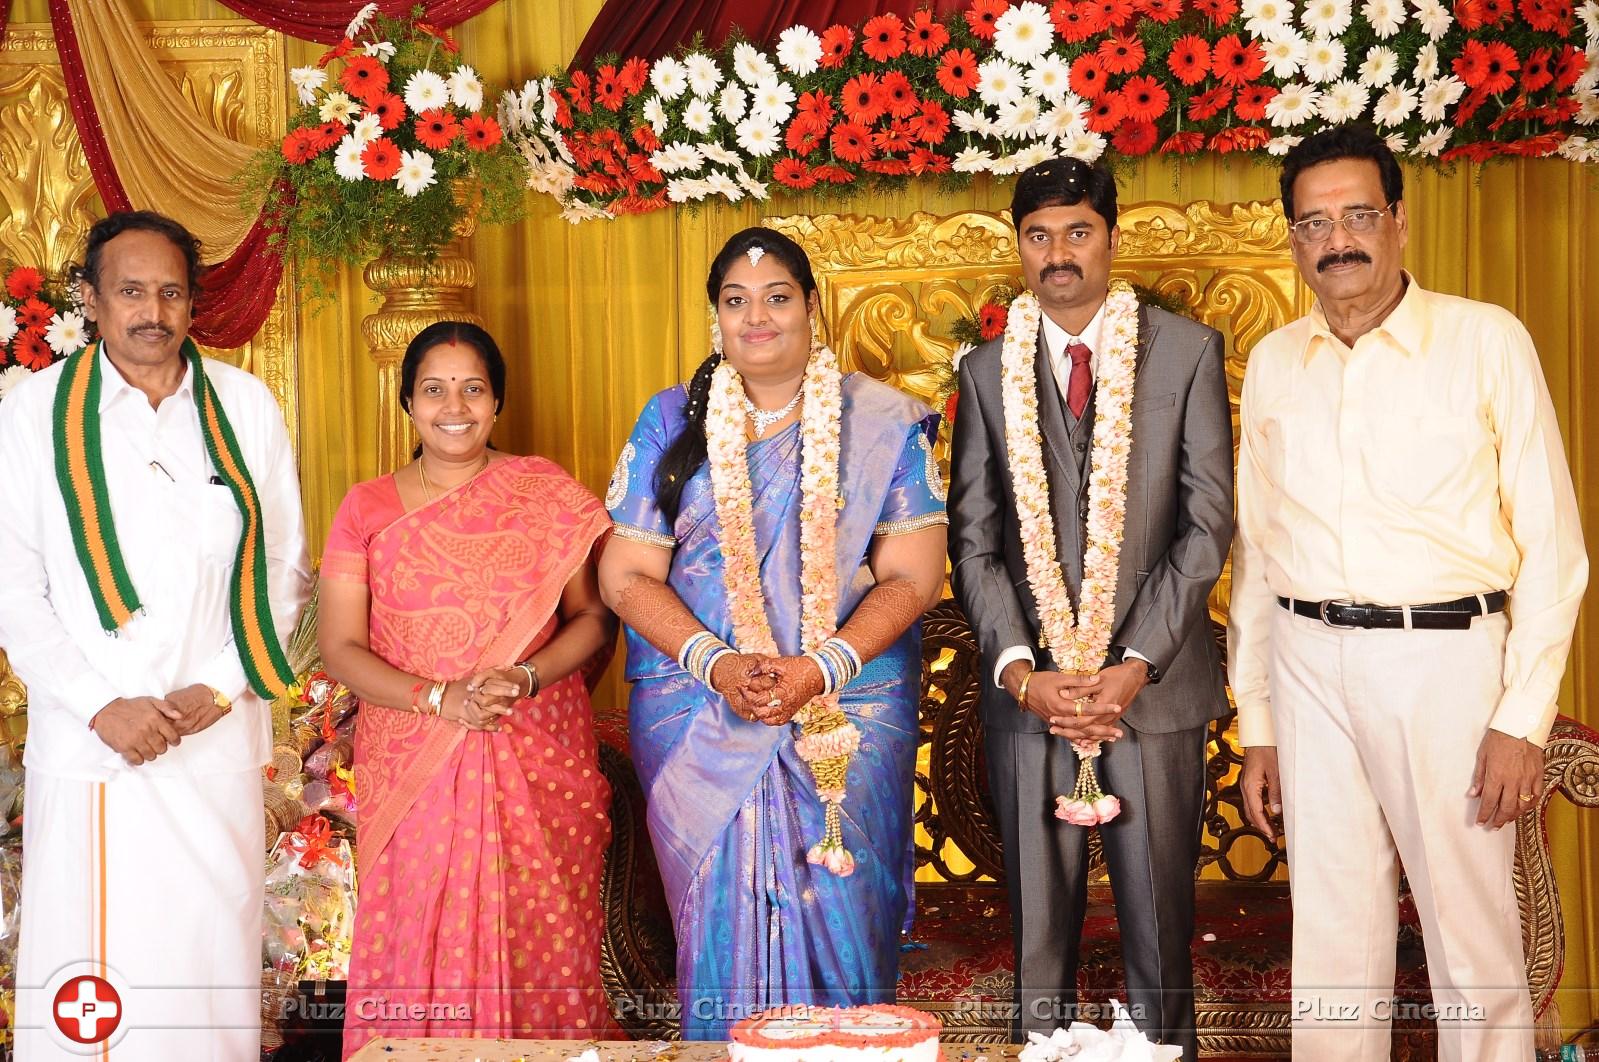 Anbalaya K Prabhakaran Daughter Wedding Stills | Picture 871562